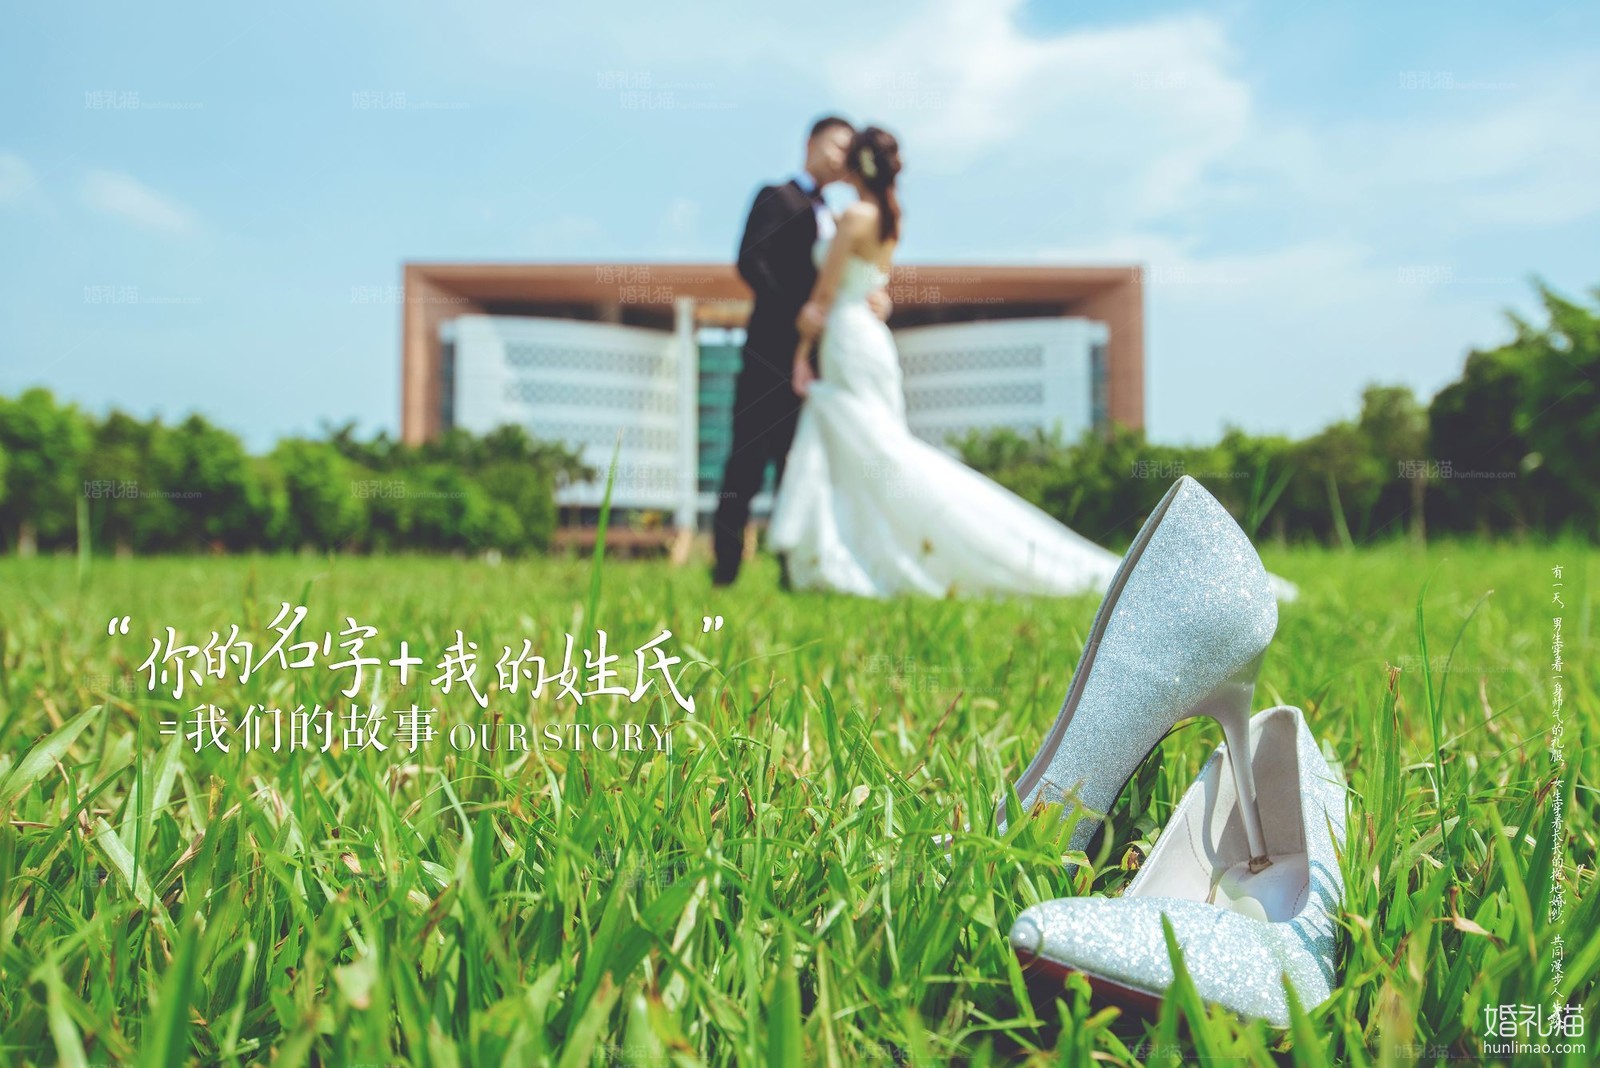 2018年11月广州婚纱照图片,,茂名婚纱照,婚纱照图片